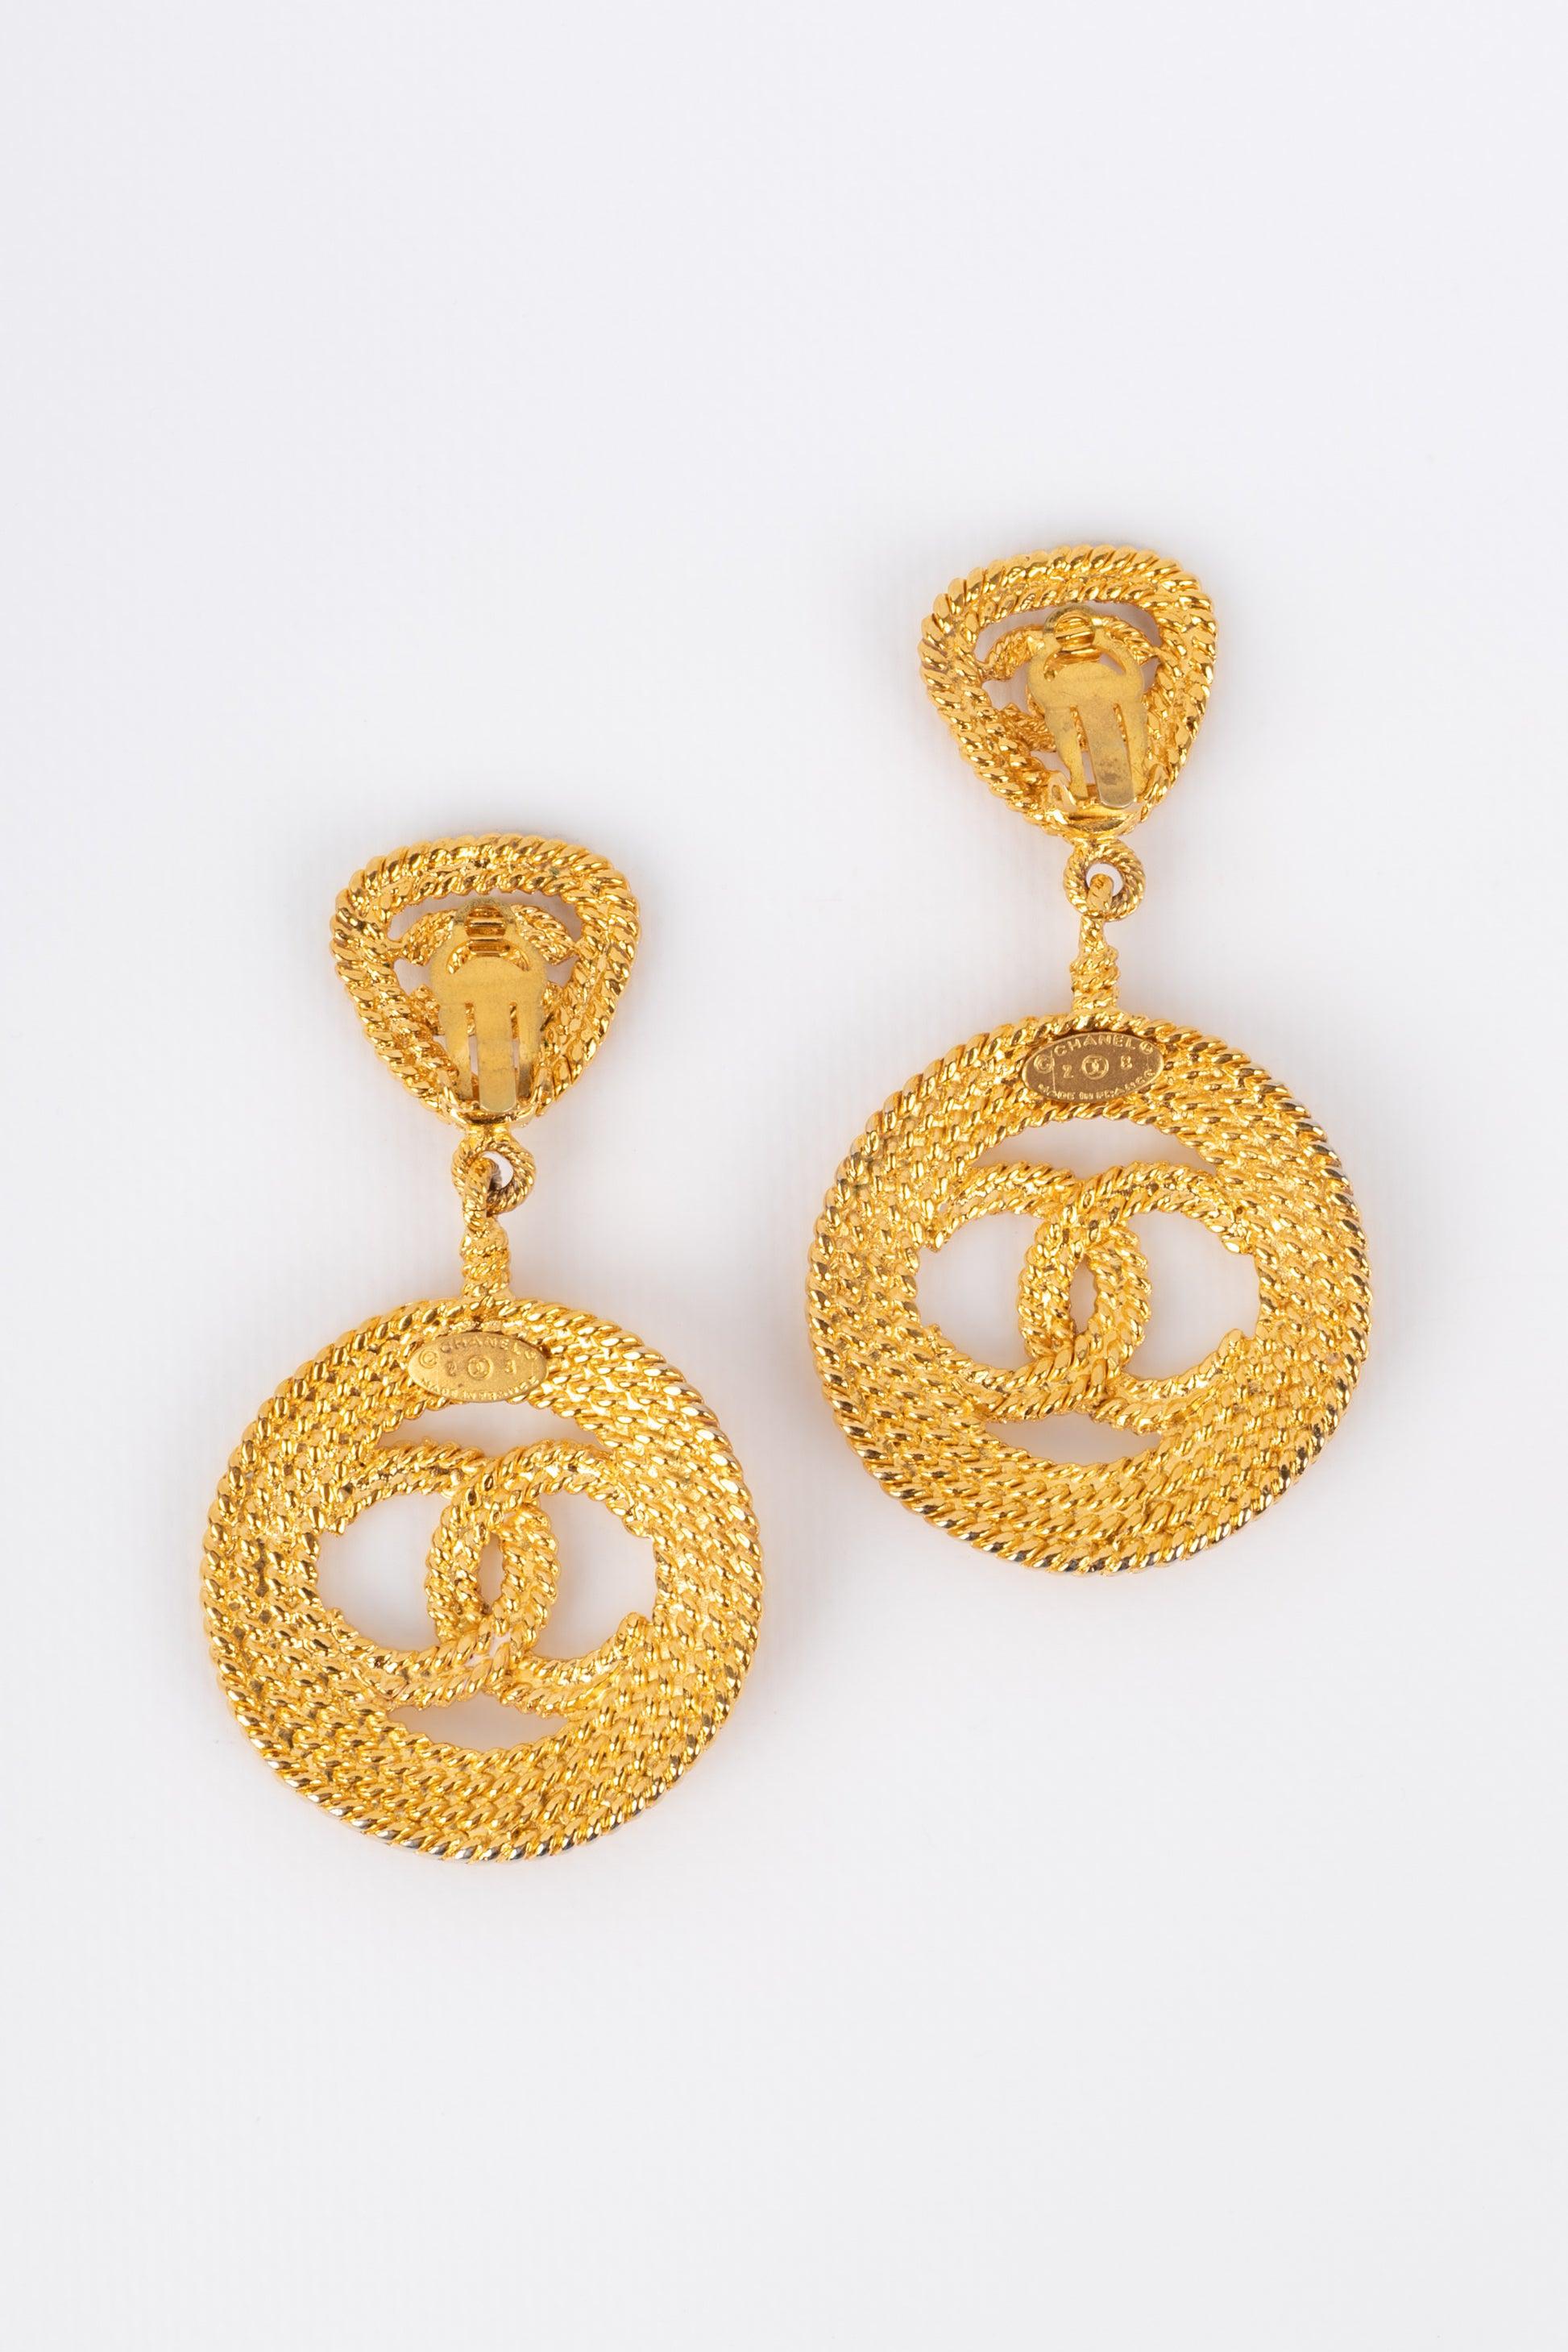 Chanel Golden Metal Earrings, 1990s For Sale 2